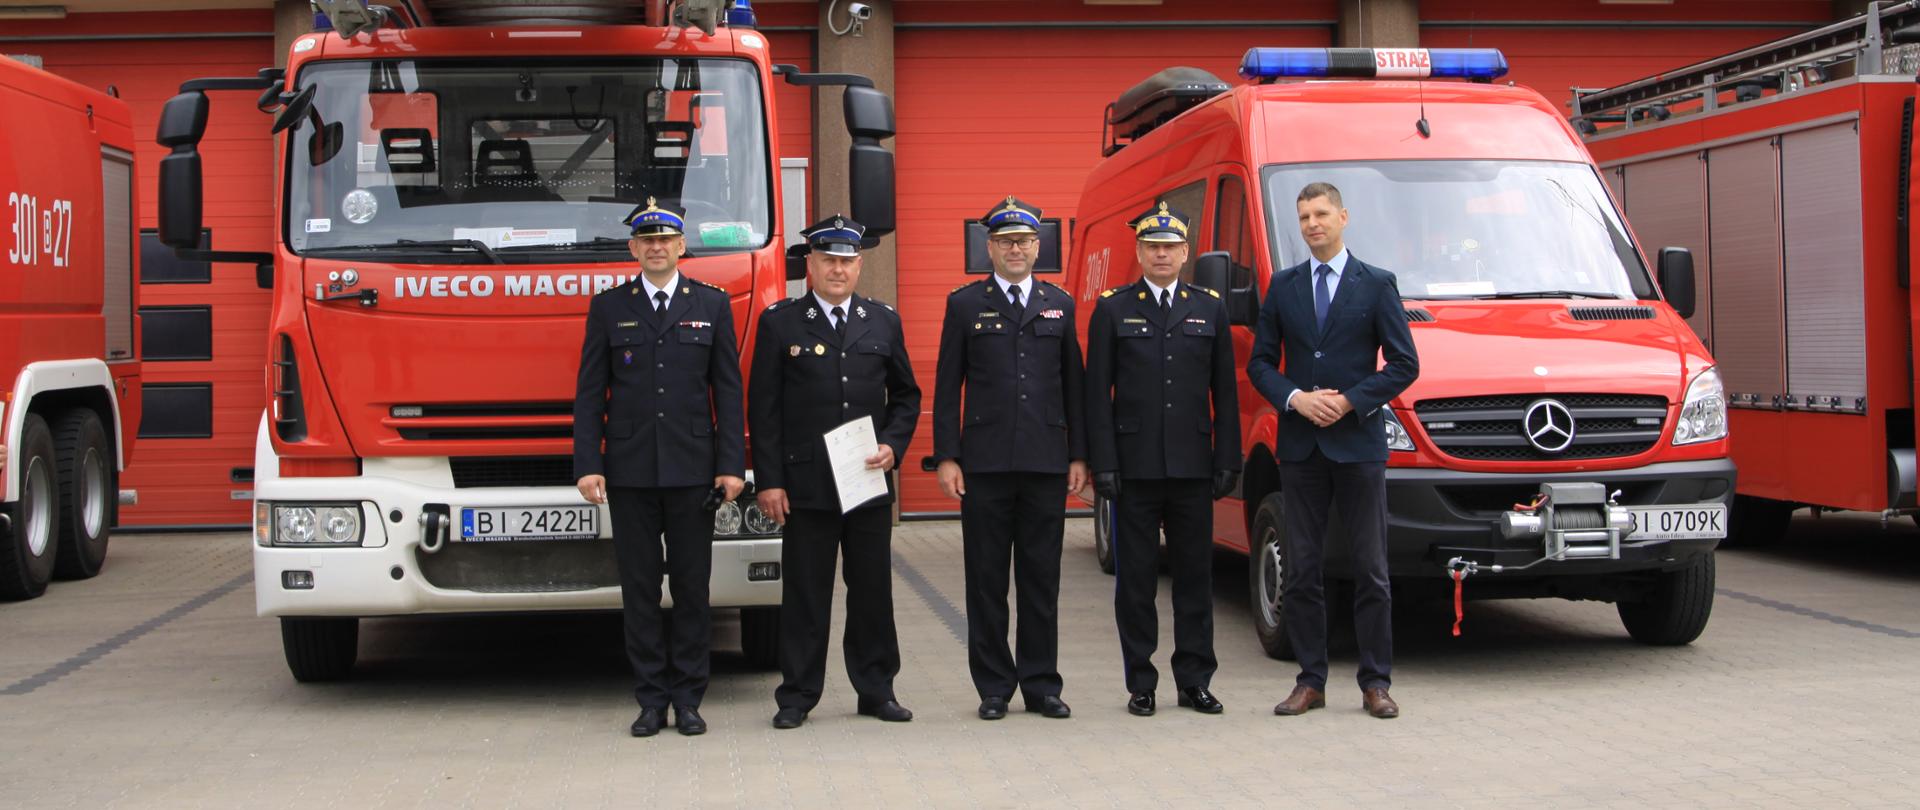 Wręczenie promesy na zakup pojazdu pożarniczego dla Ochotniczej Straży Pożarnej w Starym Laskowcu na placu przed siedzibą KW